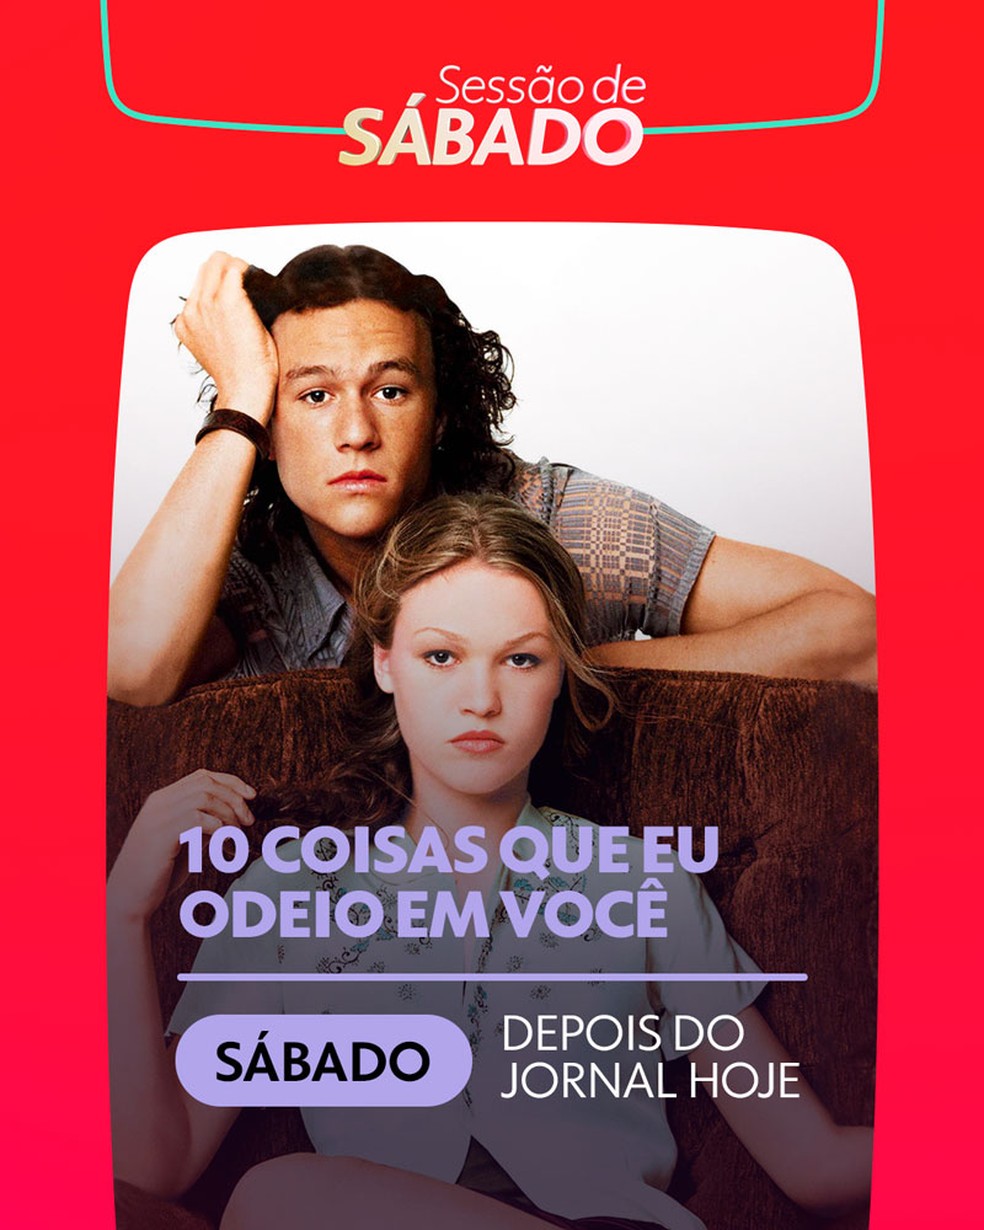 Rede Globo > filmes - Confira curiosidades sobre o filme 'O Grande